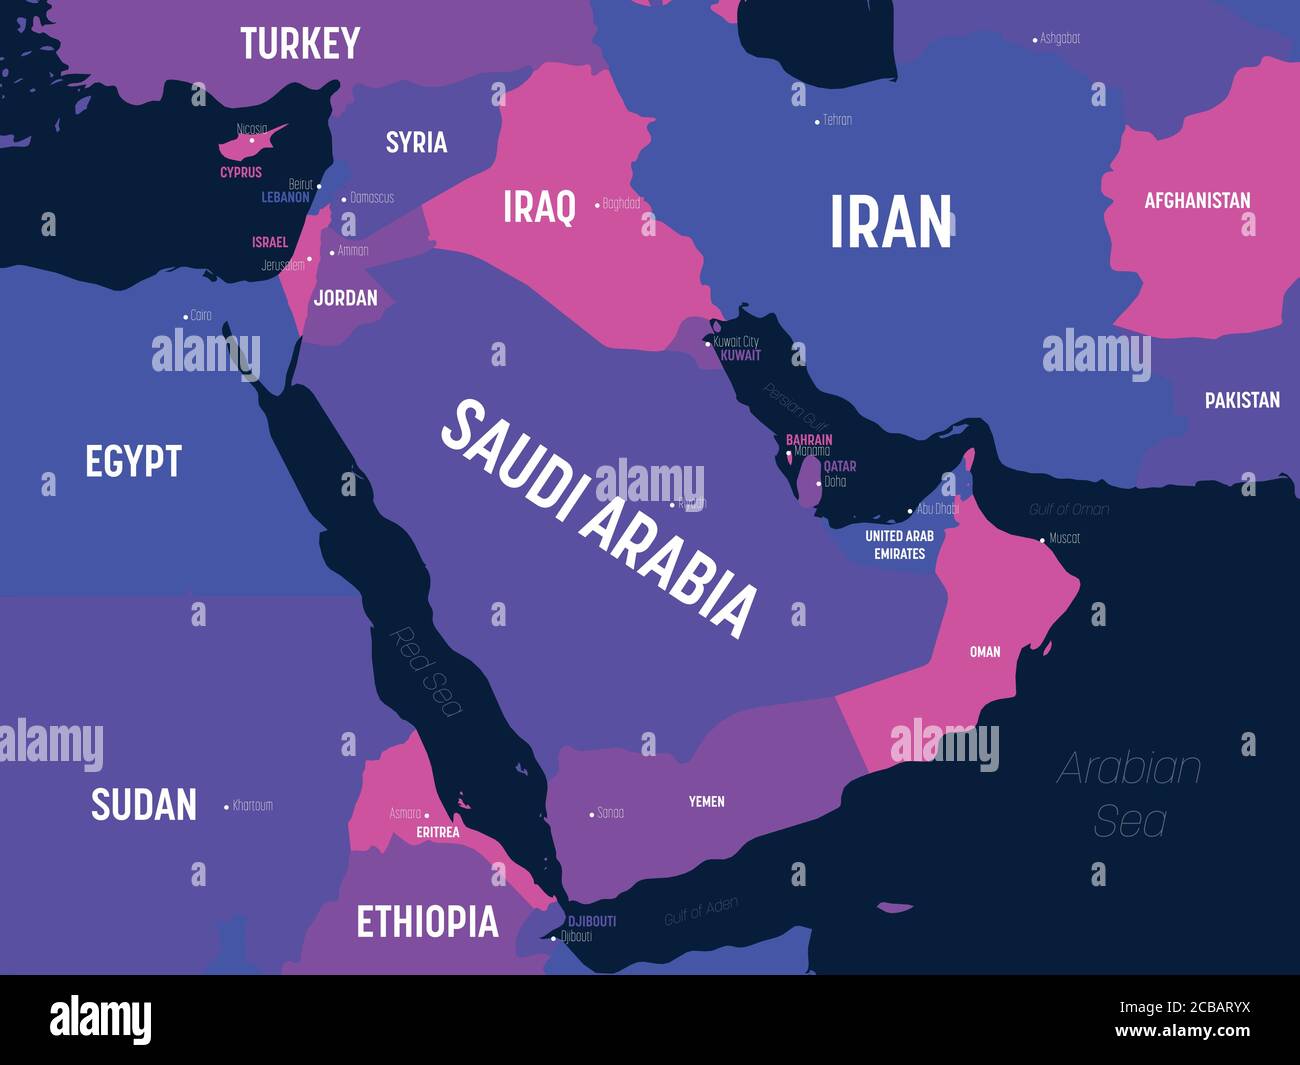 Mappa del Medio Oriente. Mappa politica dettagliata del Medio Oriente e della regione della Penisola arabica con l'etichettatura dei nomi di paesi, capitali, oceani e mari. Illustrazione Vettoriale